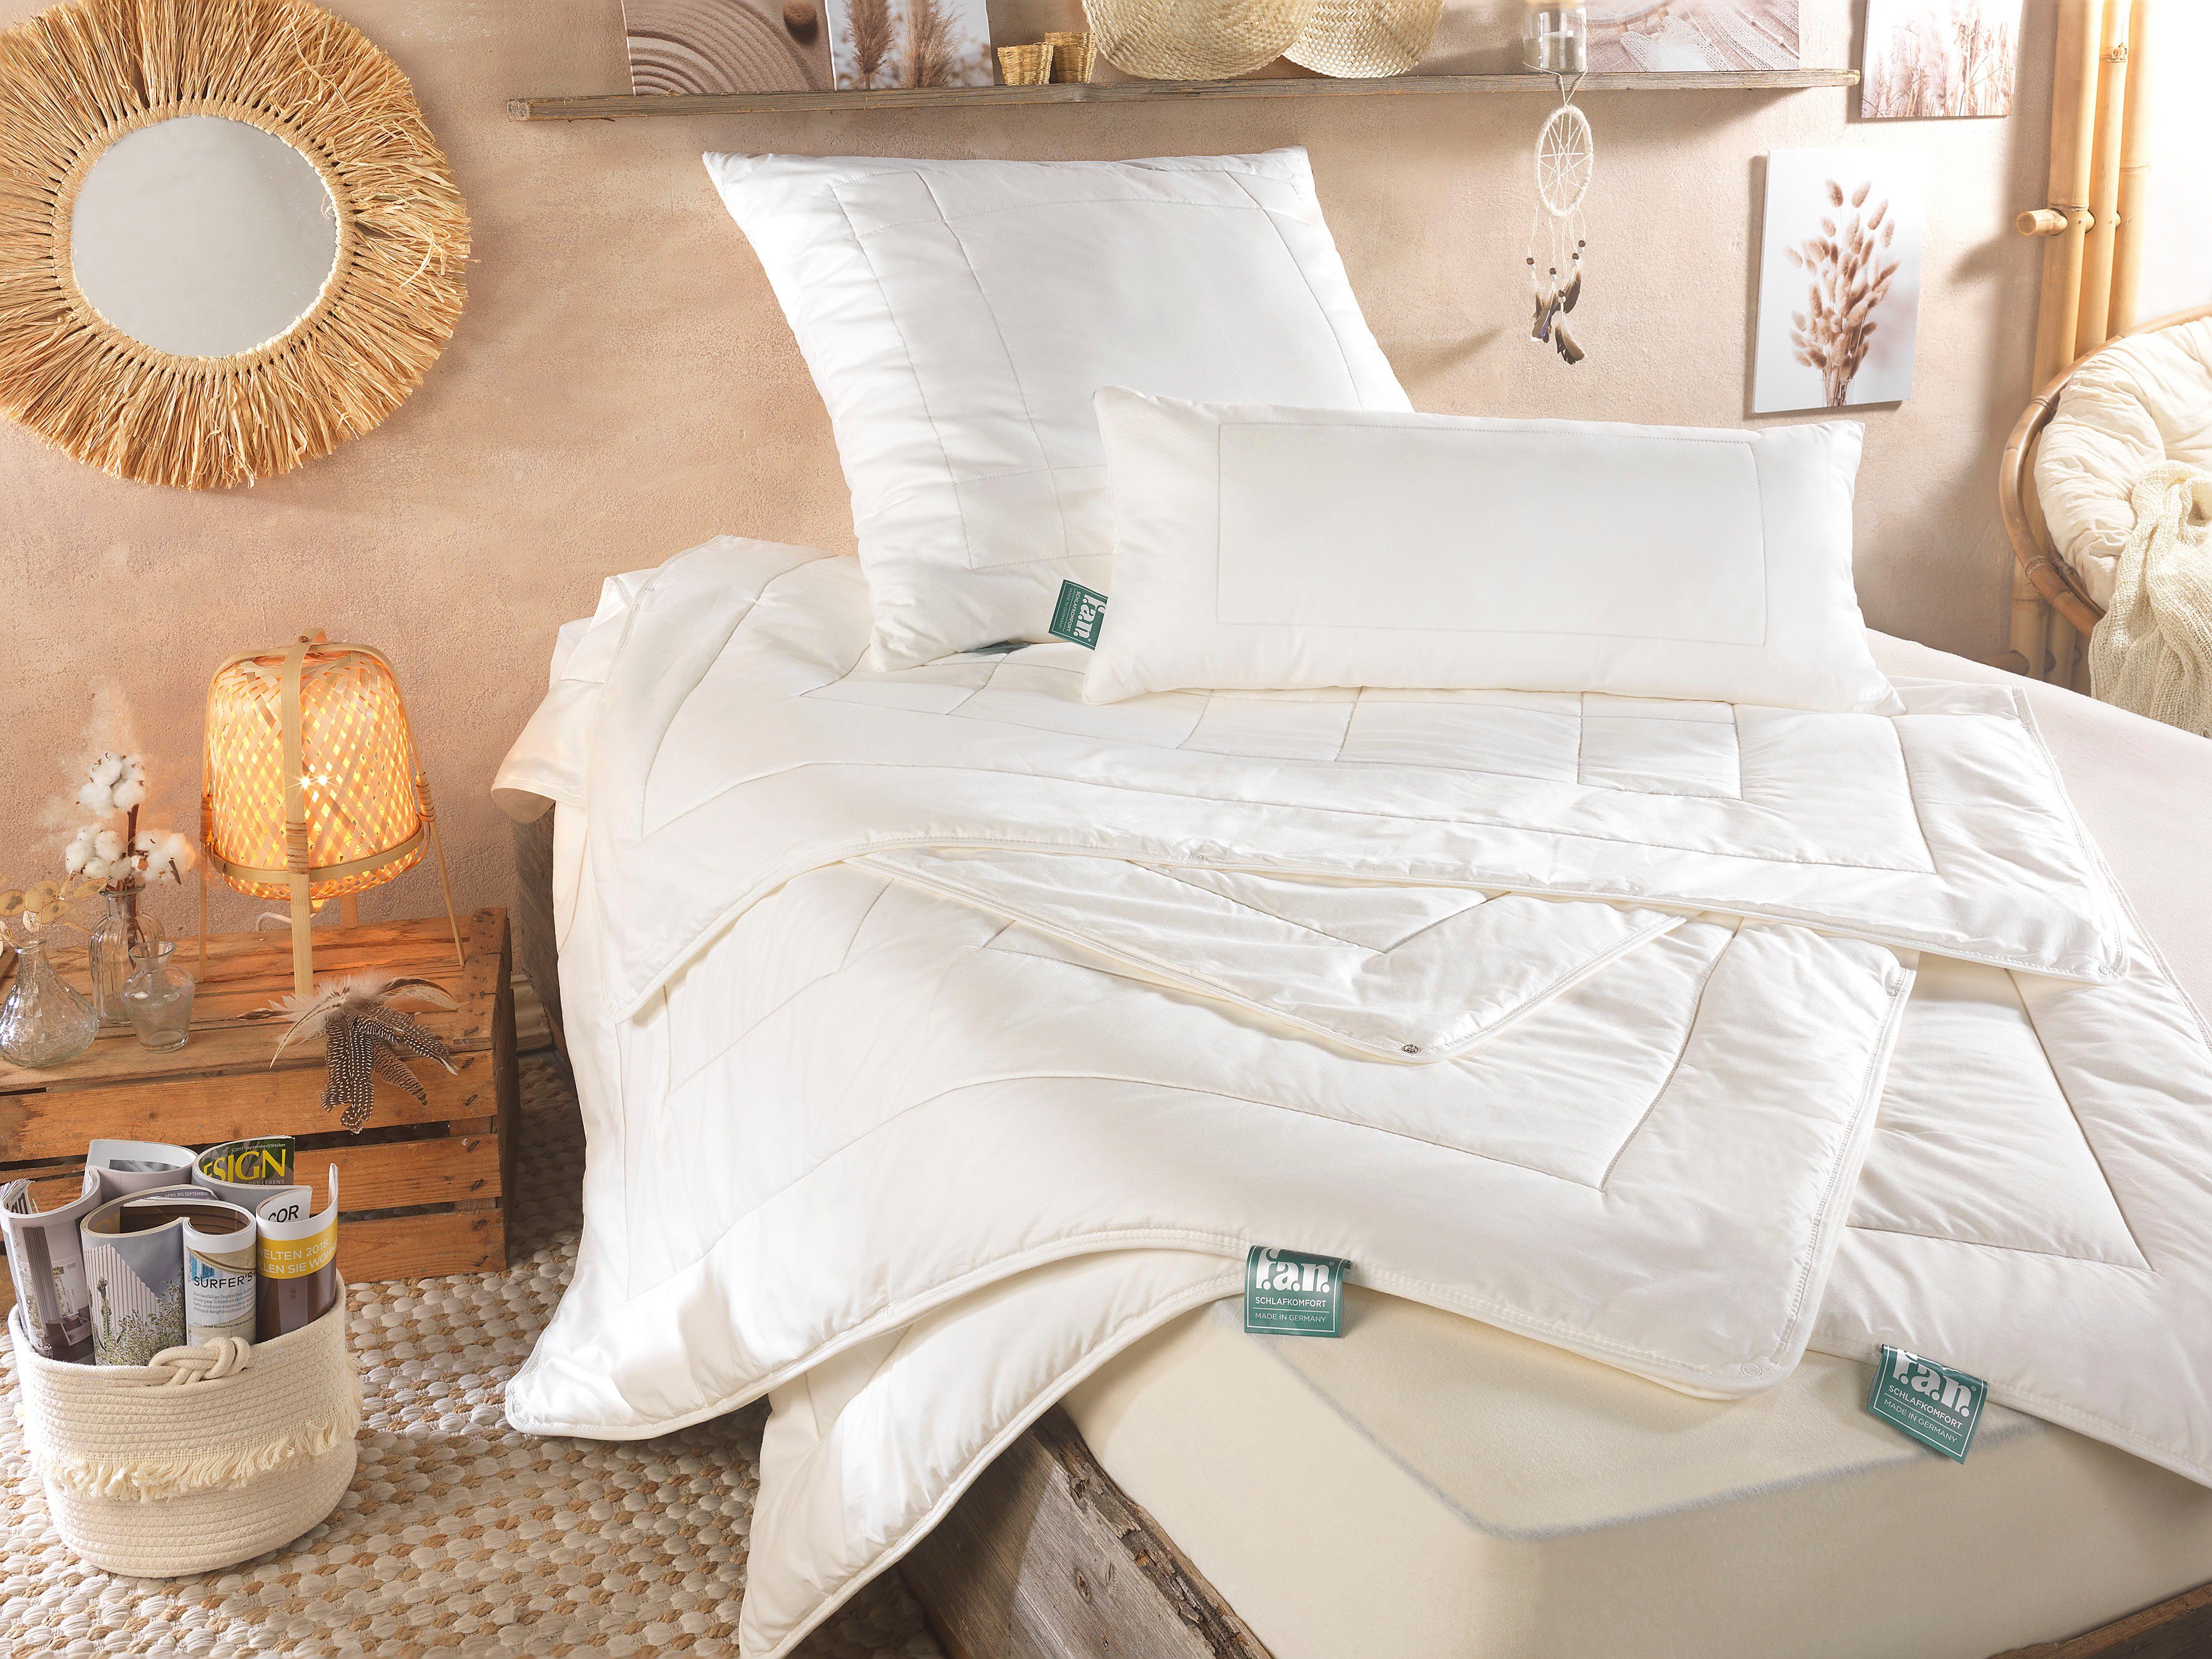 Baumwollbettdecke, African Cotton, f.a.n. Schlafkomfort, Bettdecke in 135x200 oder 155x220 cm, Winter oder Sommer | Naturfaserdecken